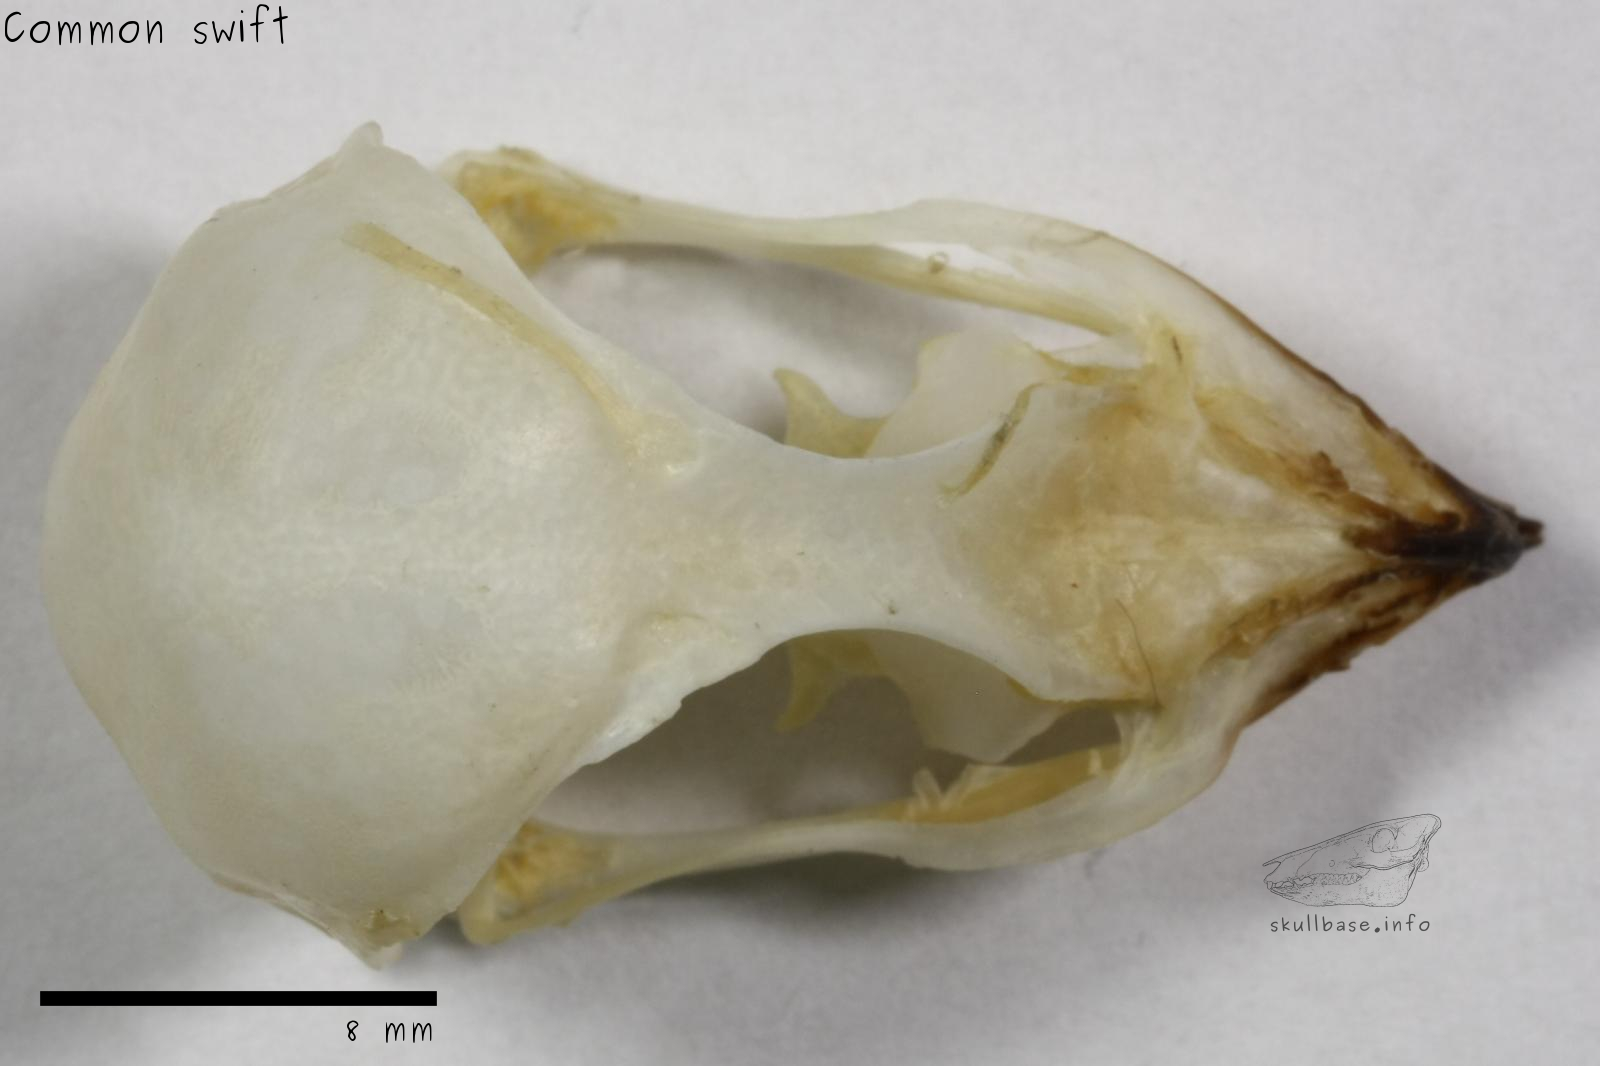 Common swift (Apus apus) skull dorsal view